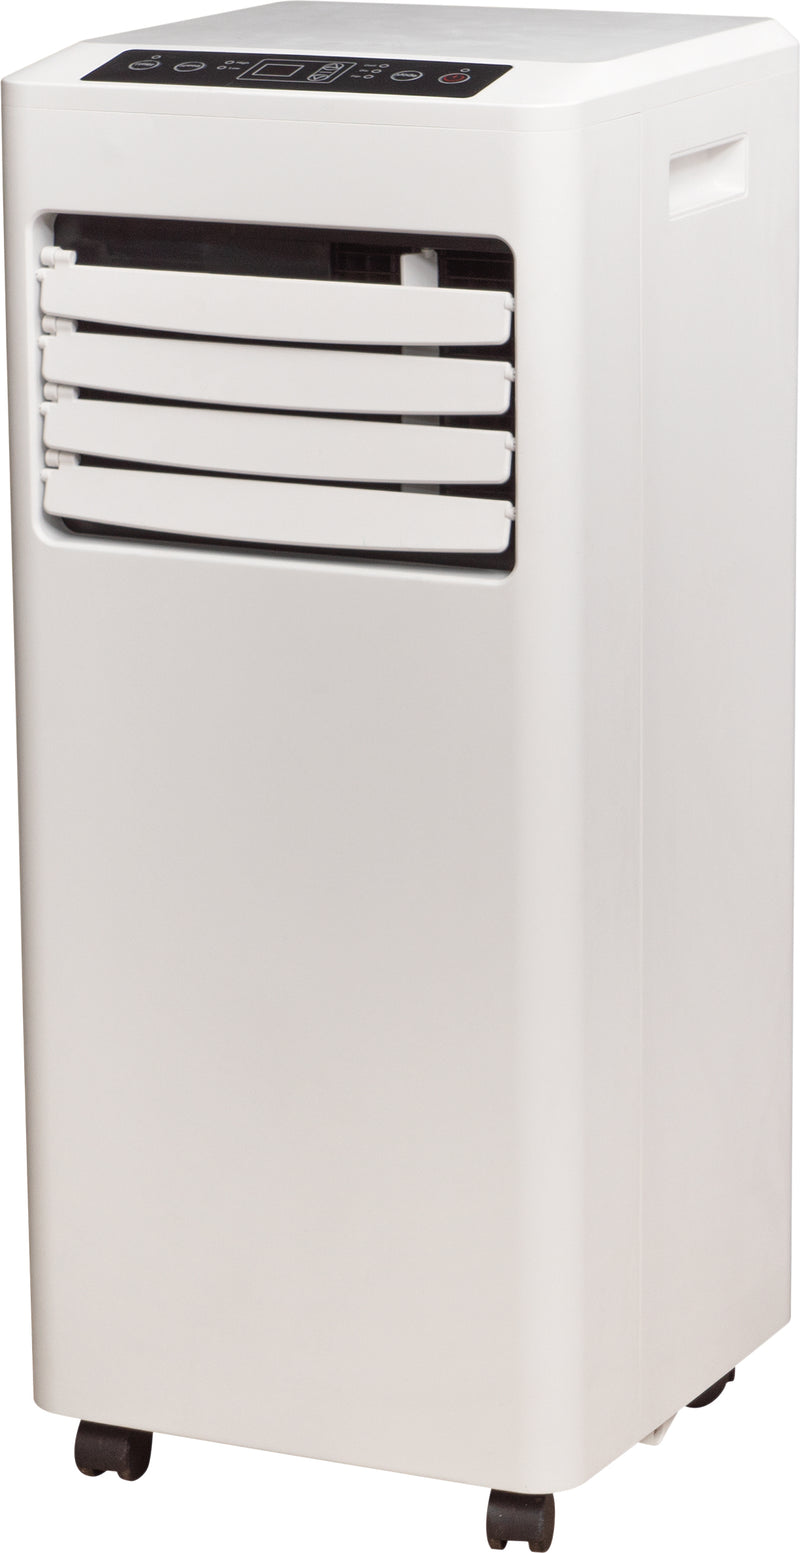 Prem-I-Air 8,000 BTU Portable Local Air Conditioner and Remote Control (EH1922)